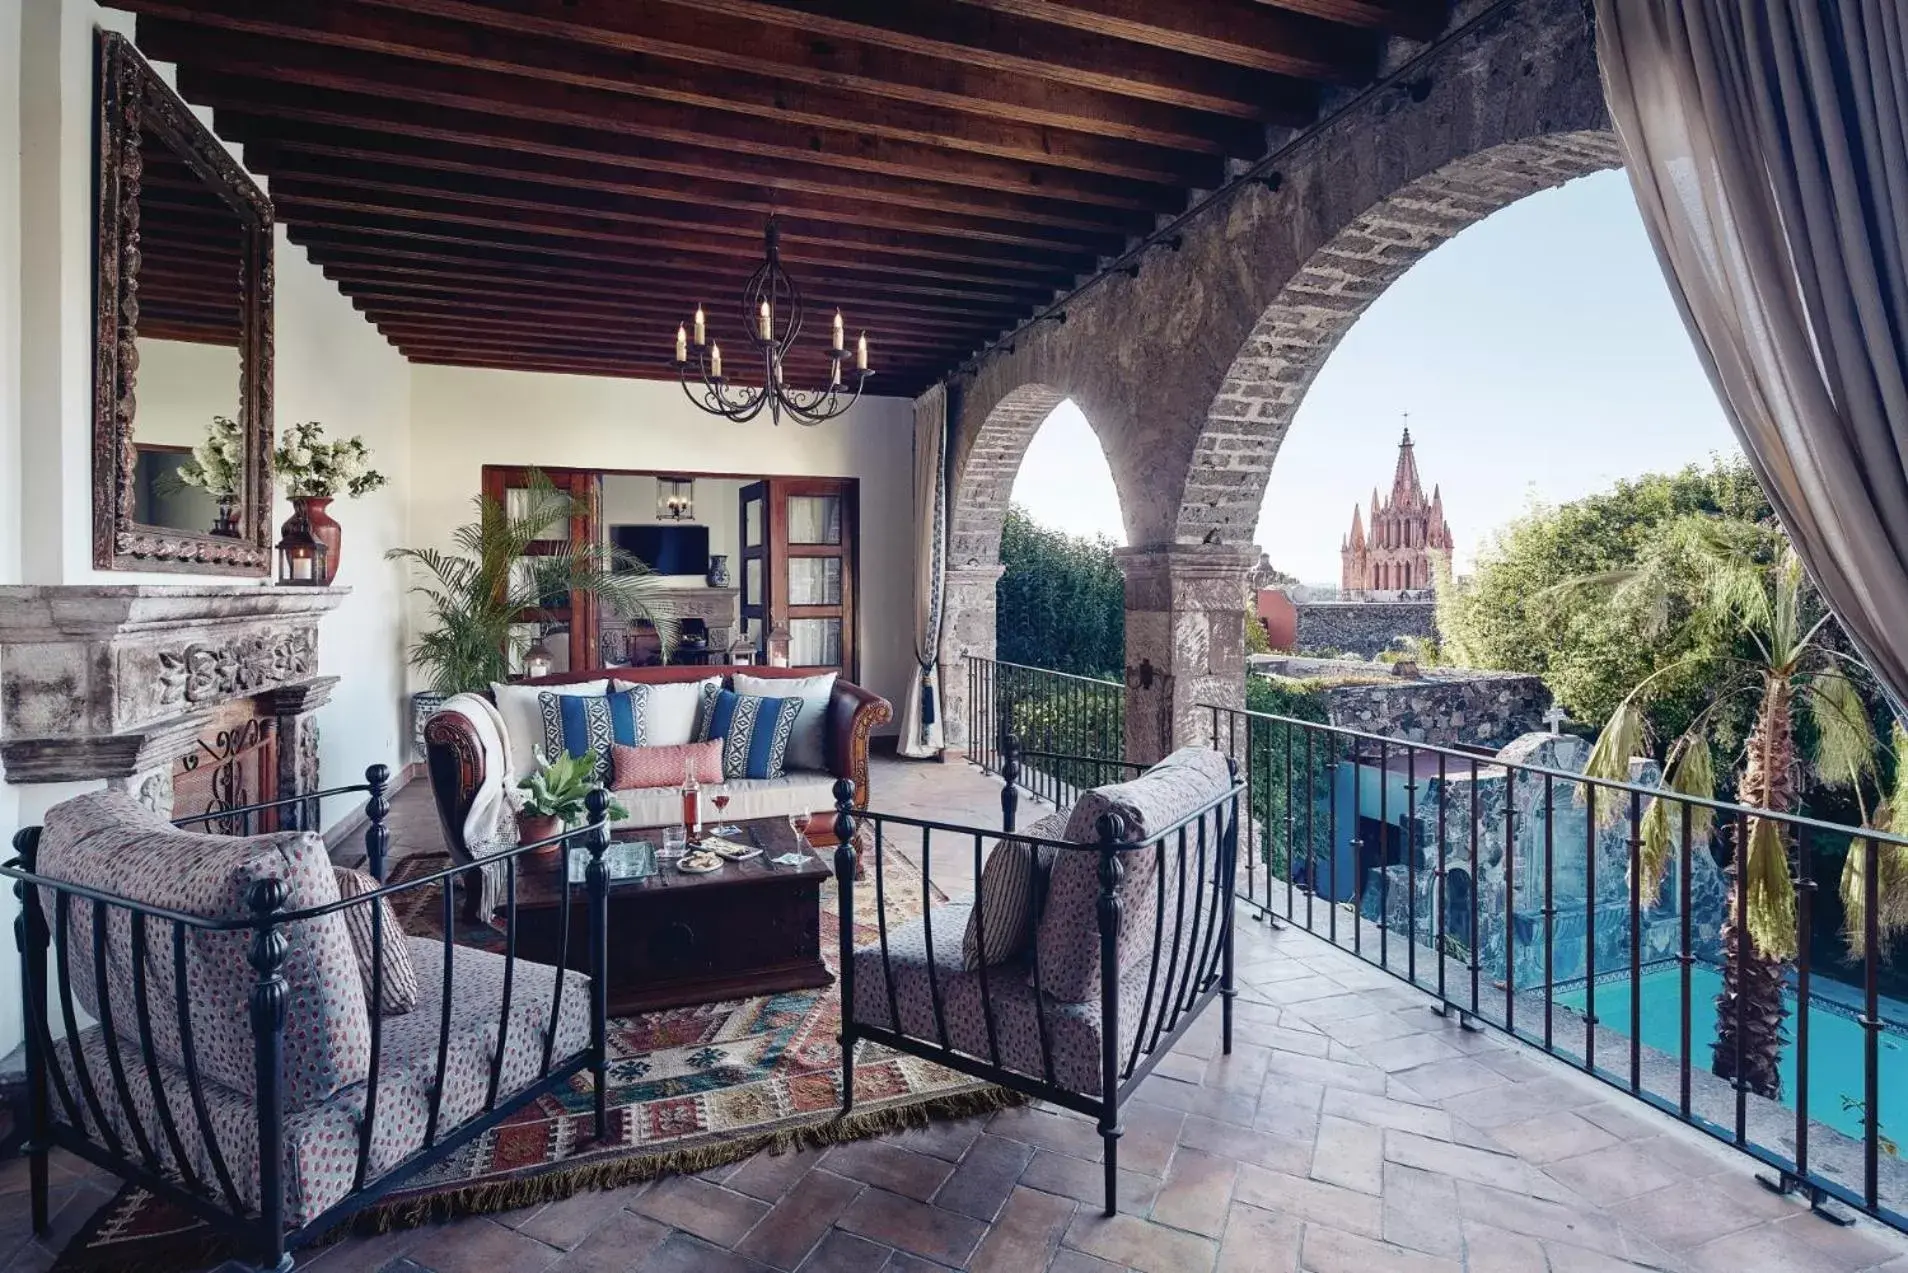 Balcony/Terrace, Pool View in Casa de Sierra Nevada, A Belmond Hotel, San Miguel de Allende